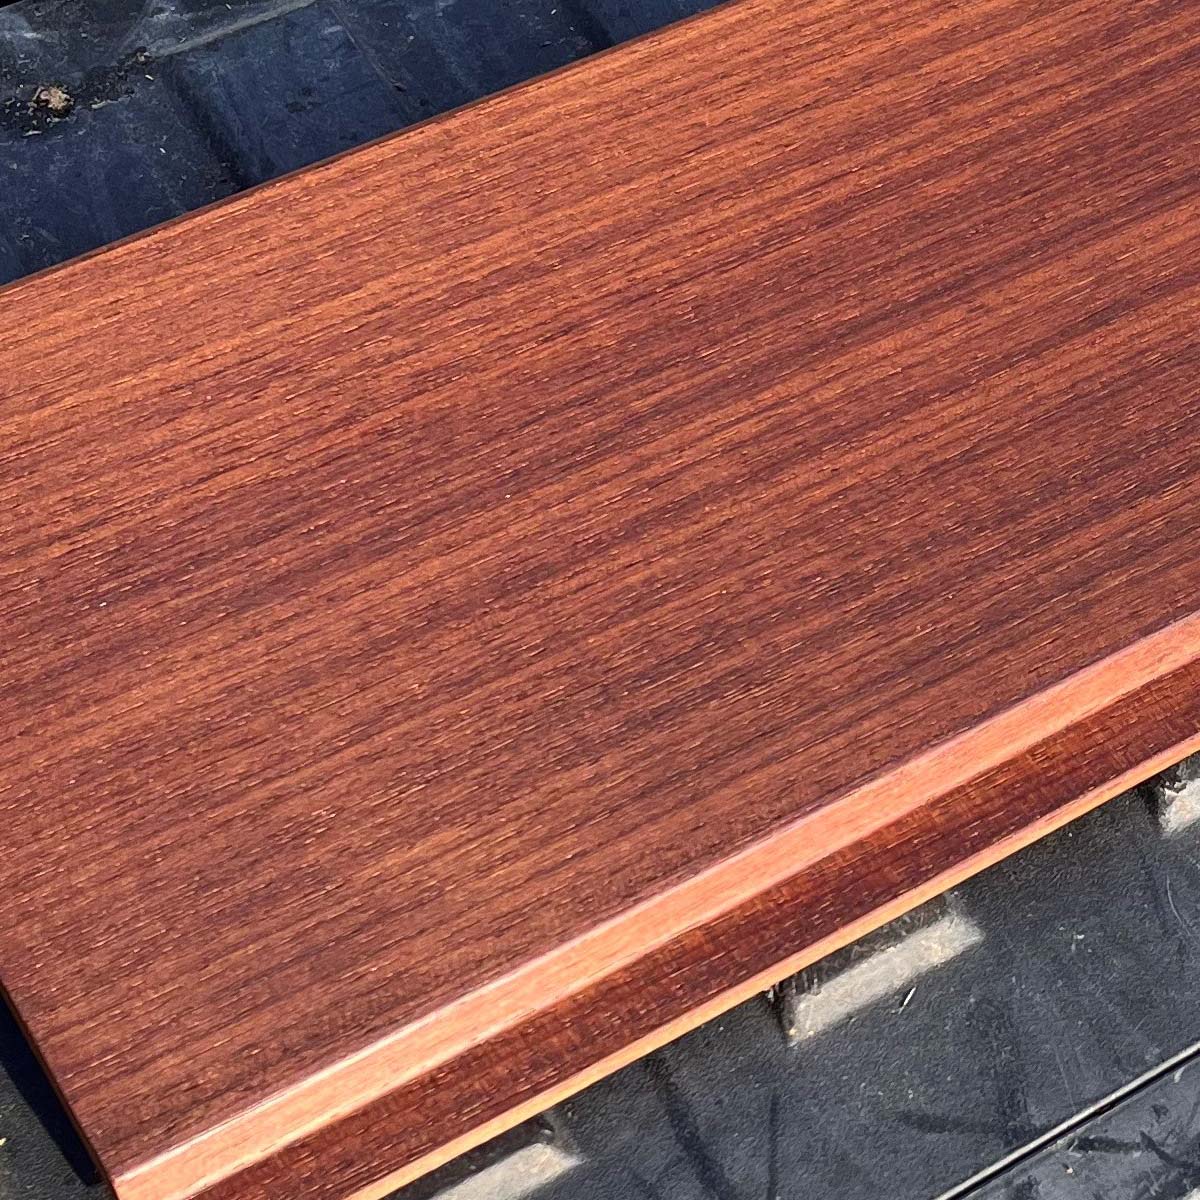 Thermally Modified Ambara™ Hardwood